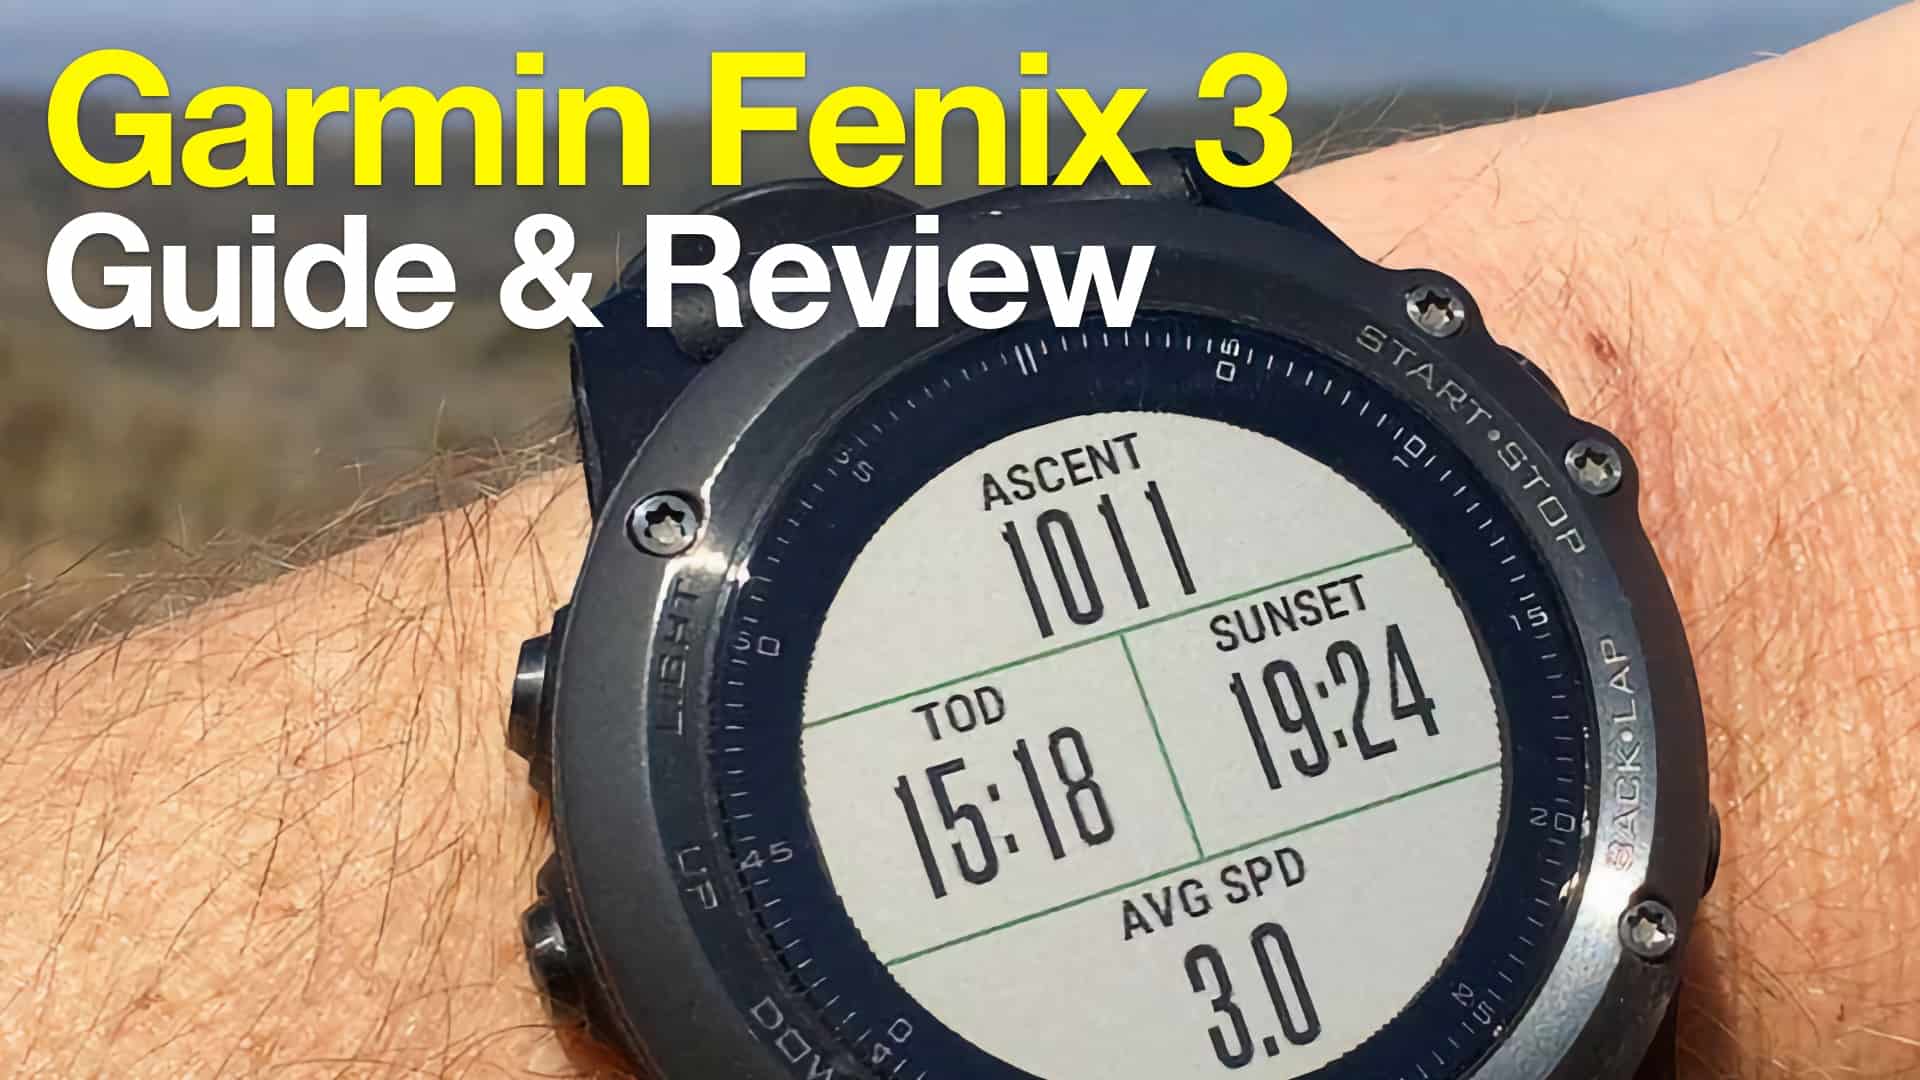 Rindende Afdeling Es Garmin Fenix 3 Hiking GPS Review - HikingGuy.com